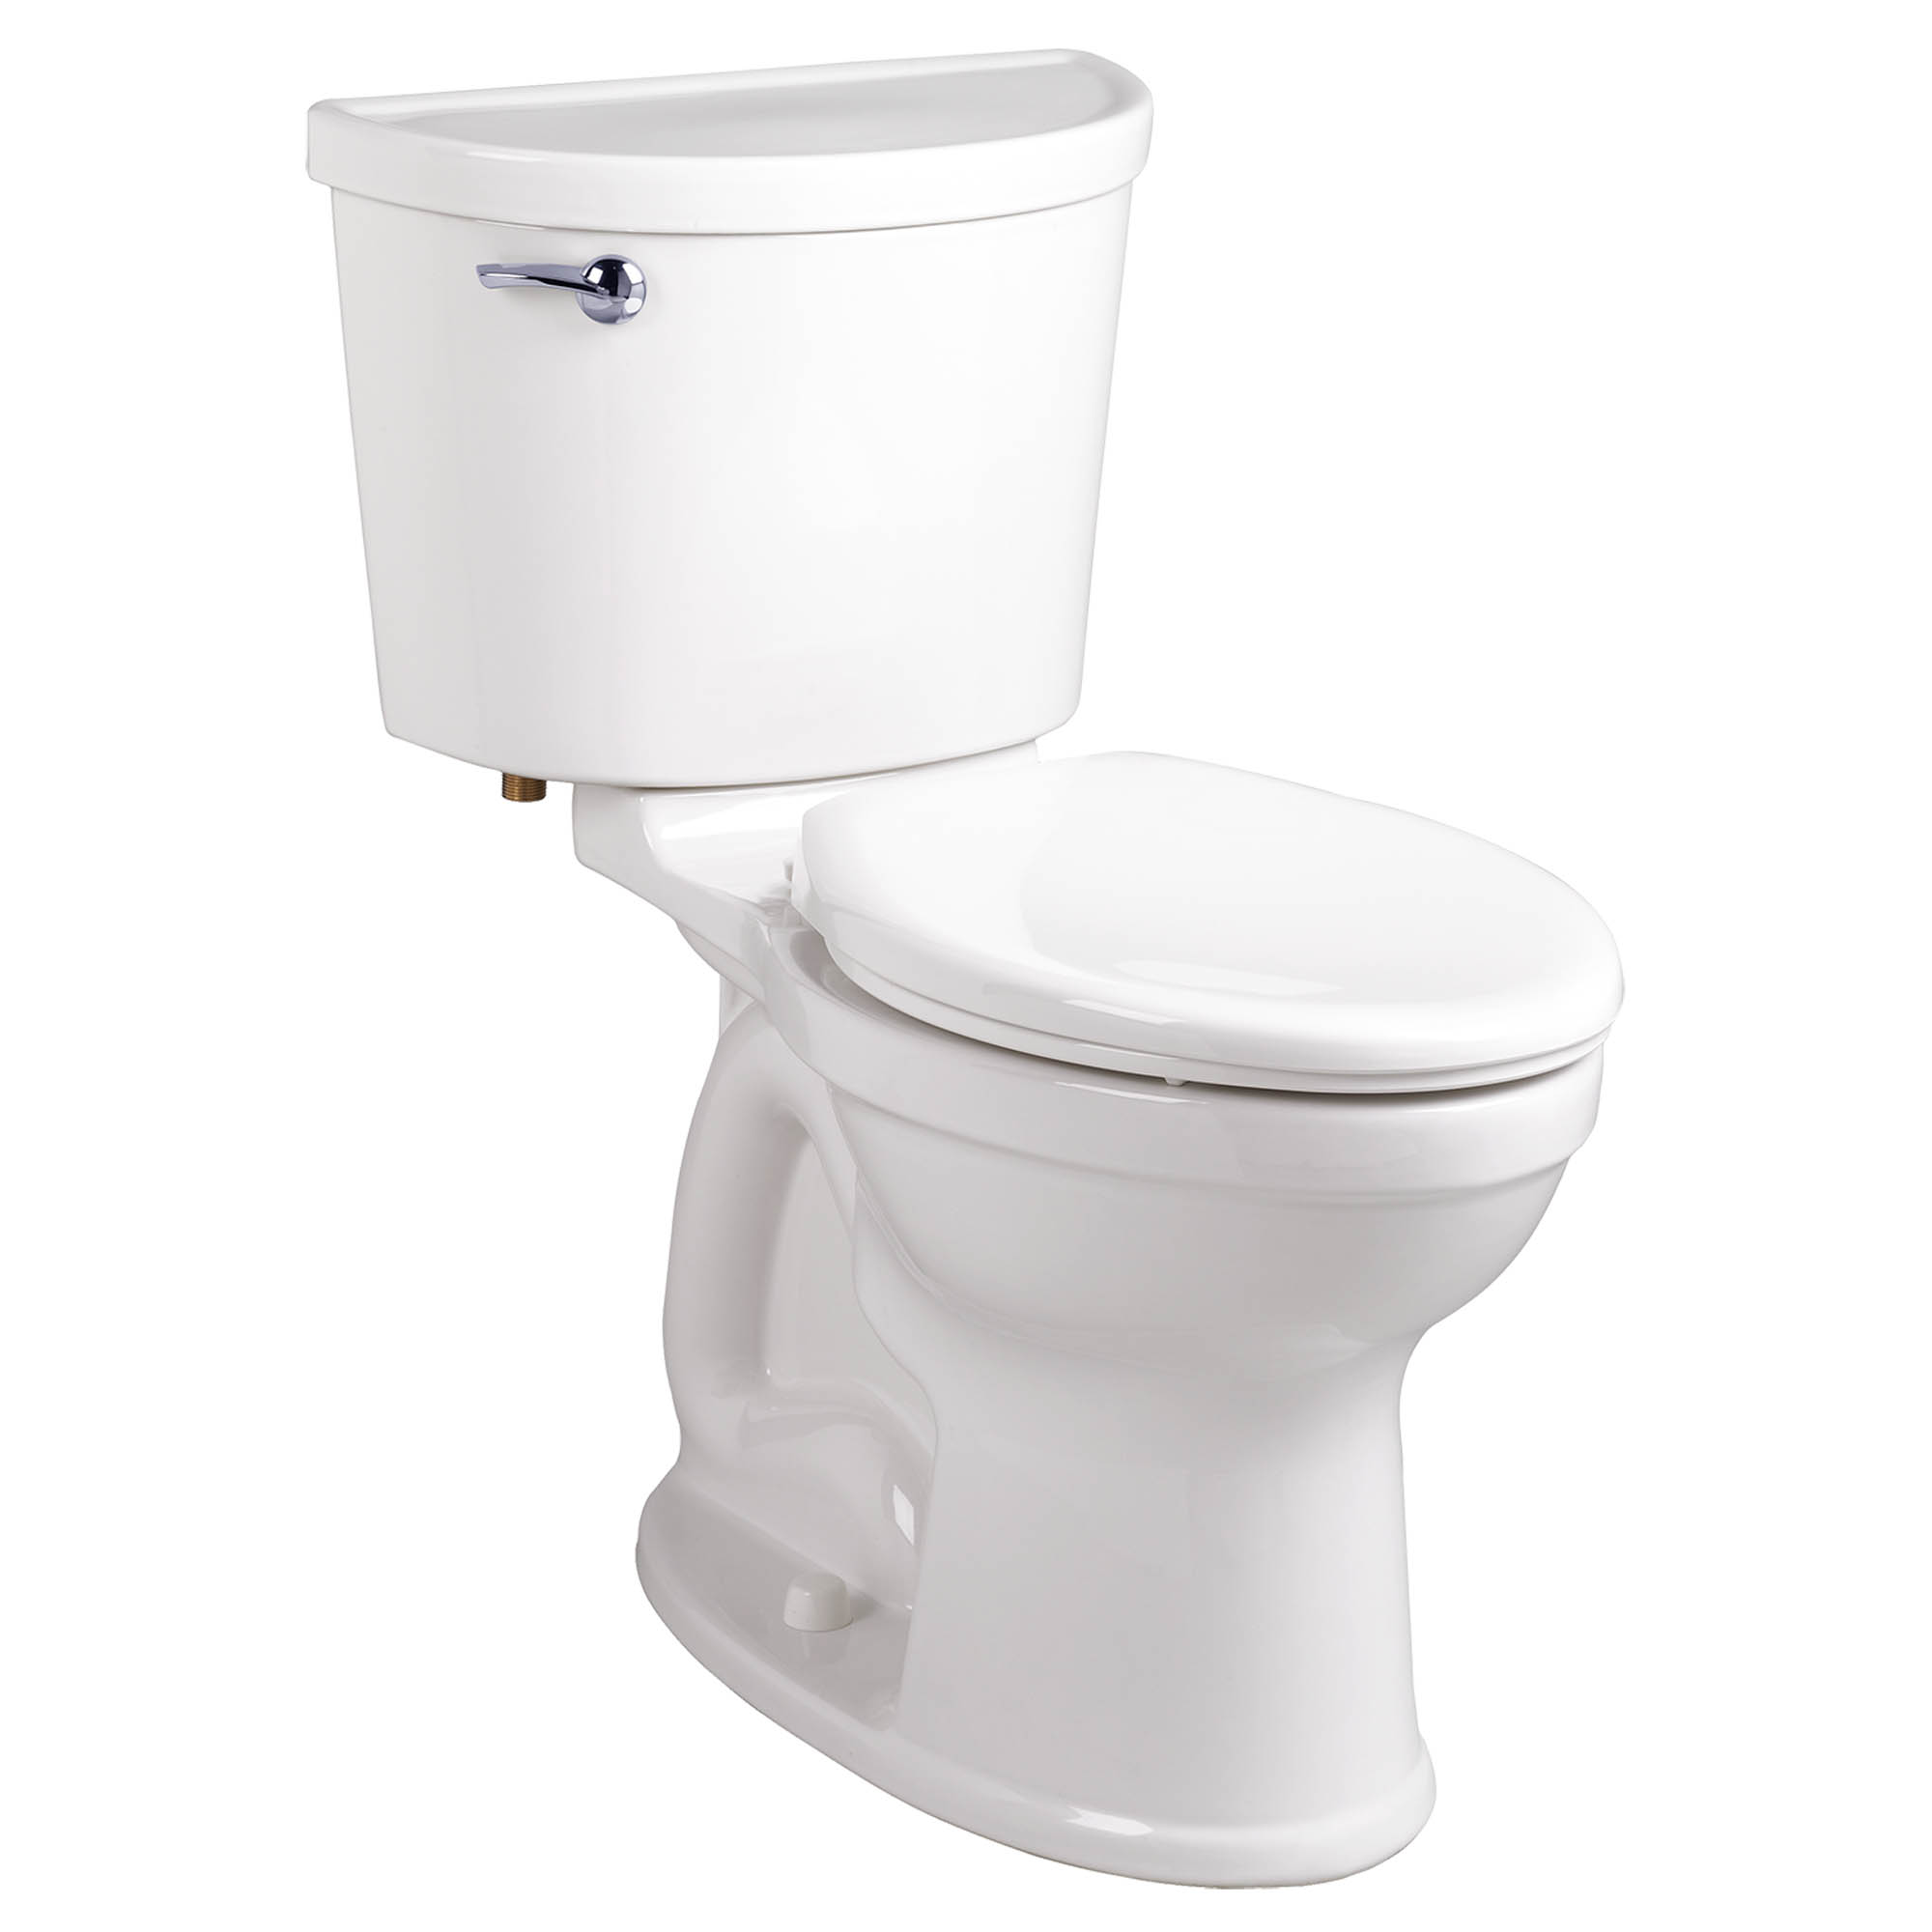 Toilette Champion PRO, 2 pièces, 1,6 gpc/6,0 lpc, à cuvette allongée à hauteur régulière, sans siège